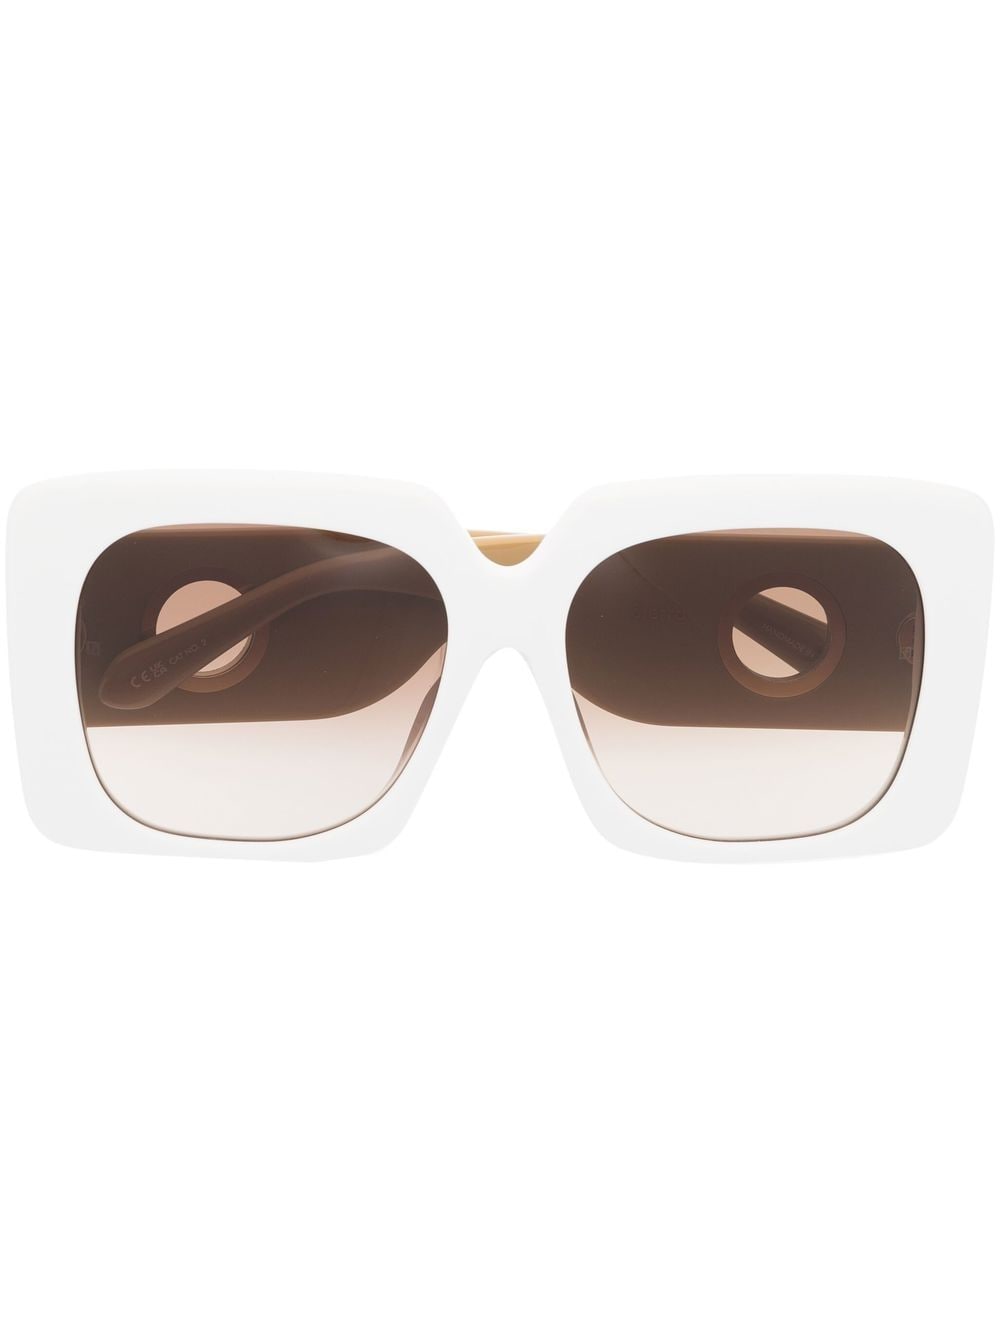 Amber D-frame sunglasses